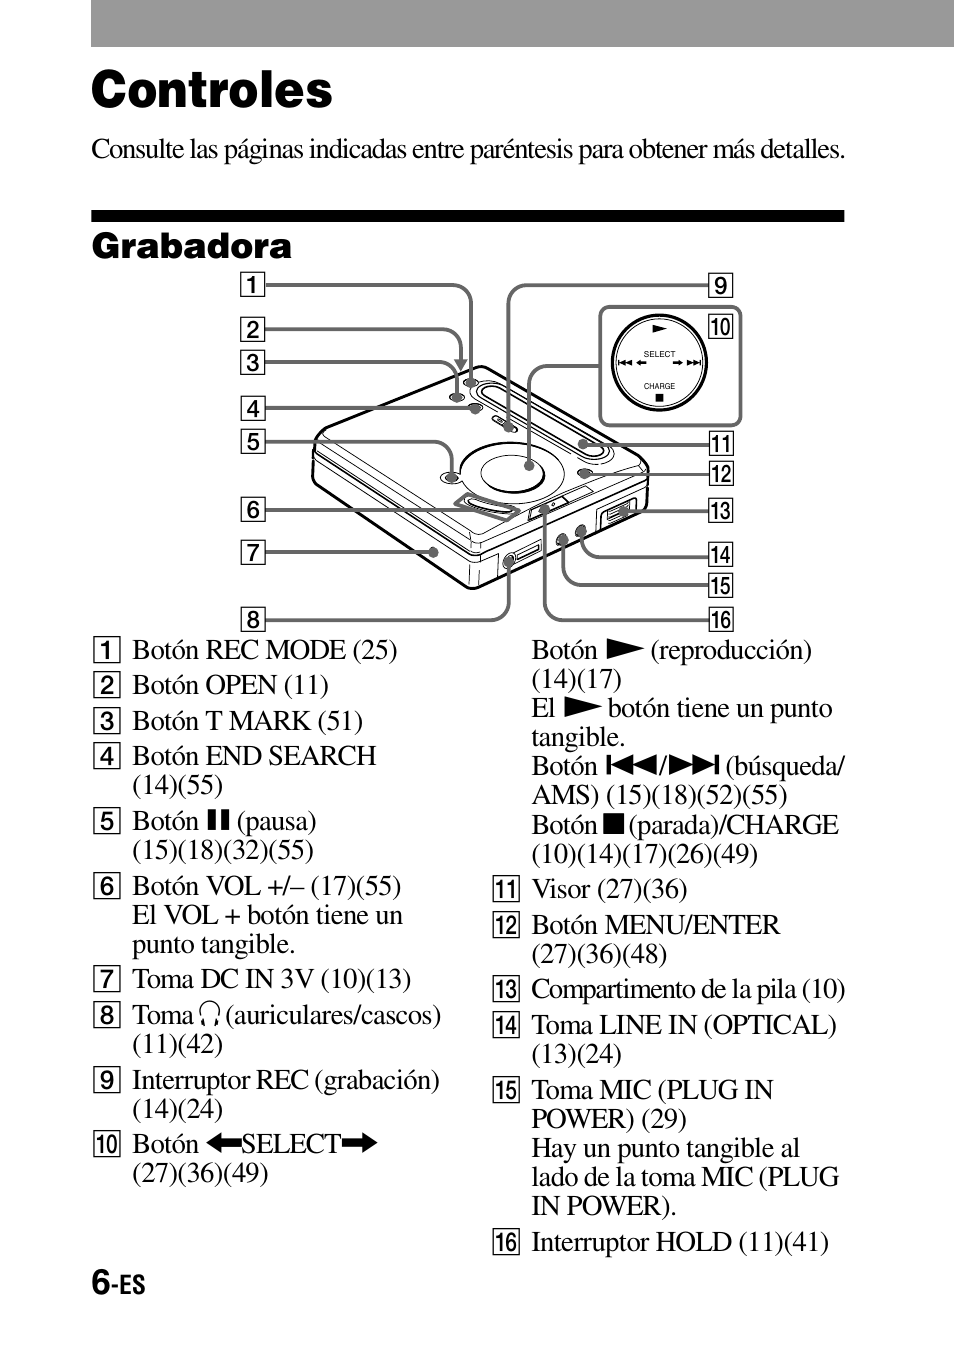 Controles, Grabadora | Sony MZ-G755 Manual del usuario | Página 6 / 152